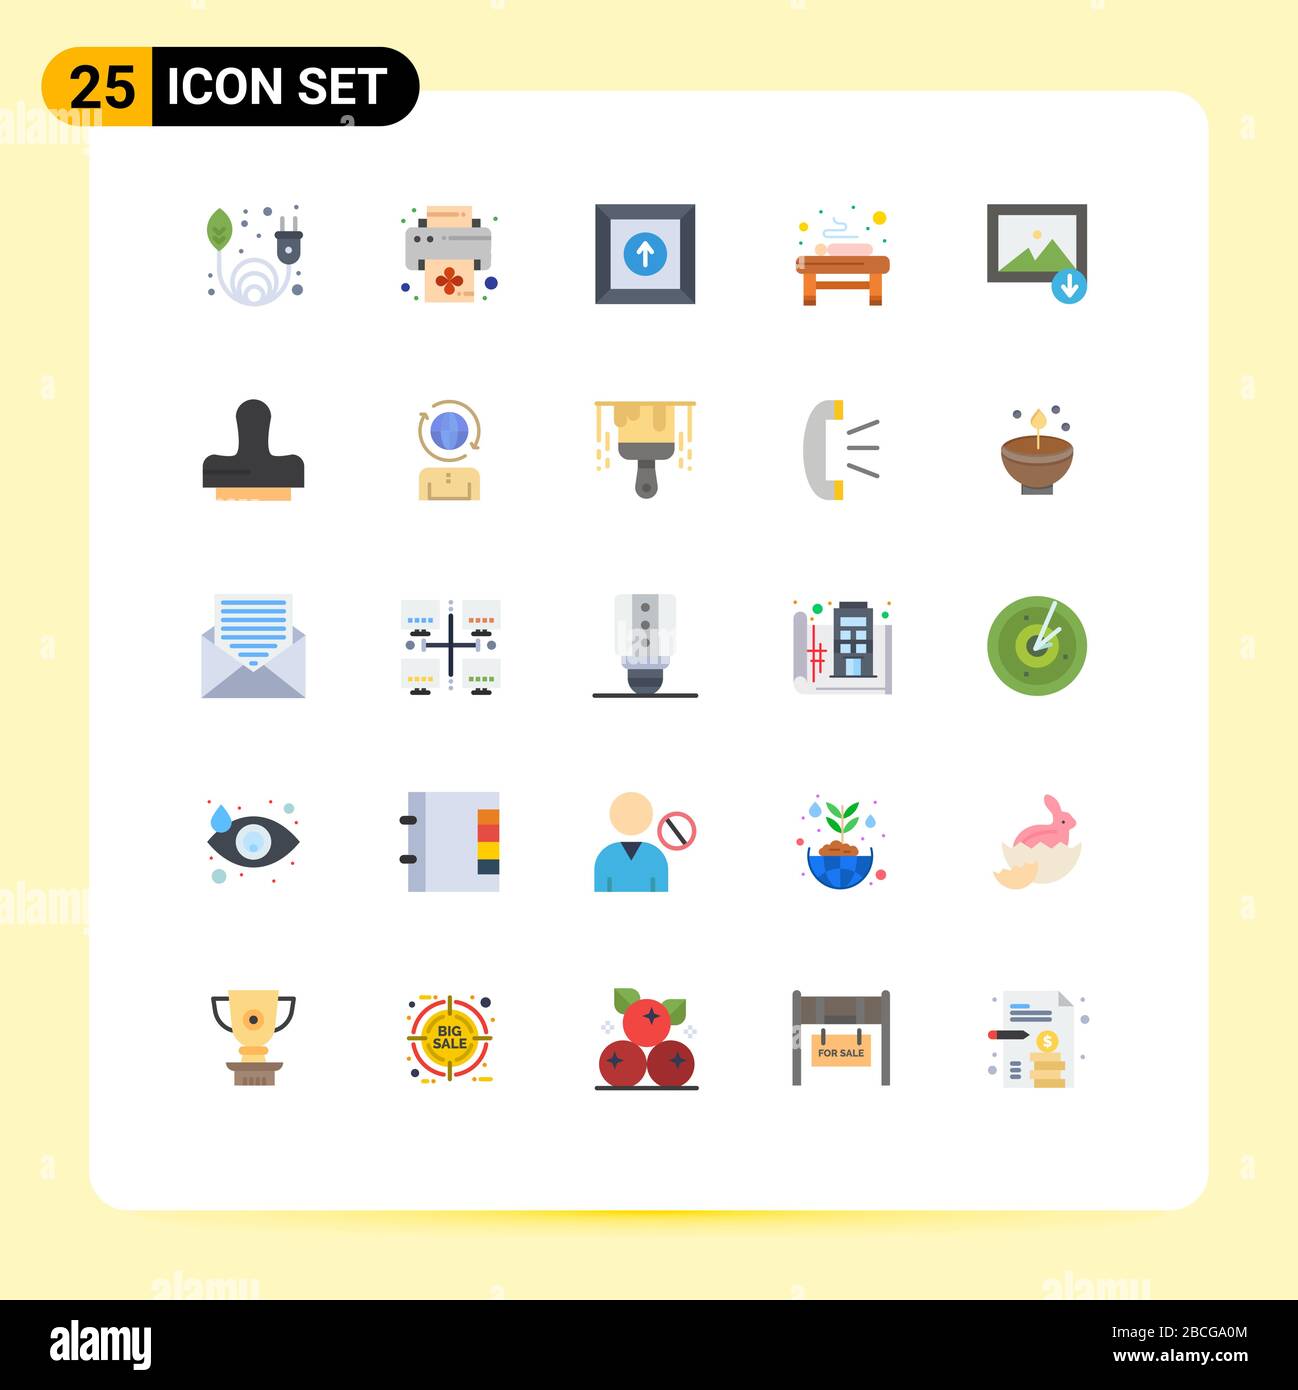 Stock Vector Icon Pack de 25 signes et symboles de ligne pour la presse, la montagne, le téléchargement, l'image, spa Editable Vector Design Elements Illustration de Vecteur